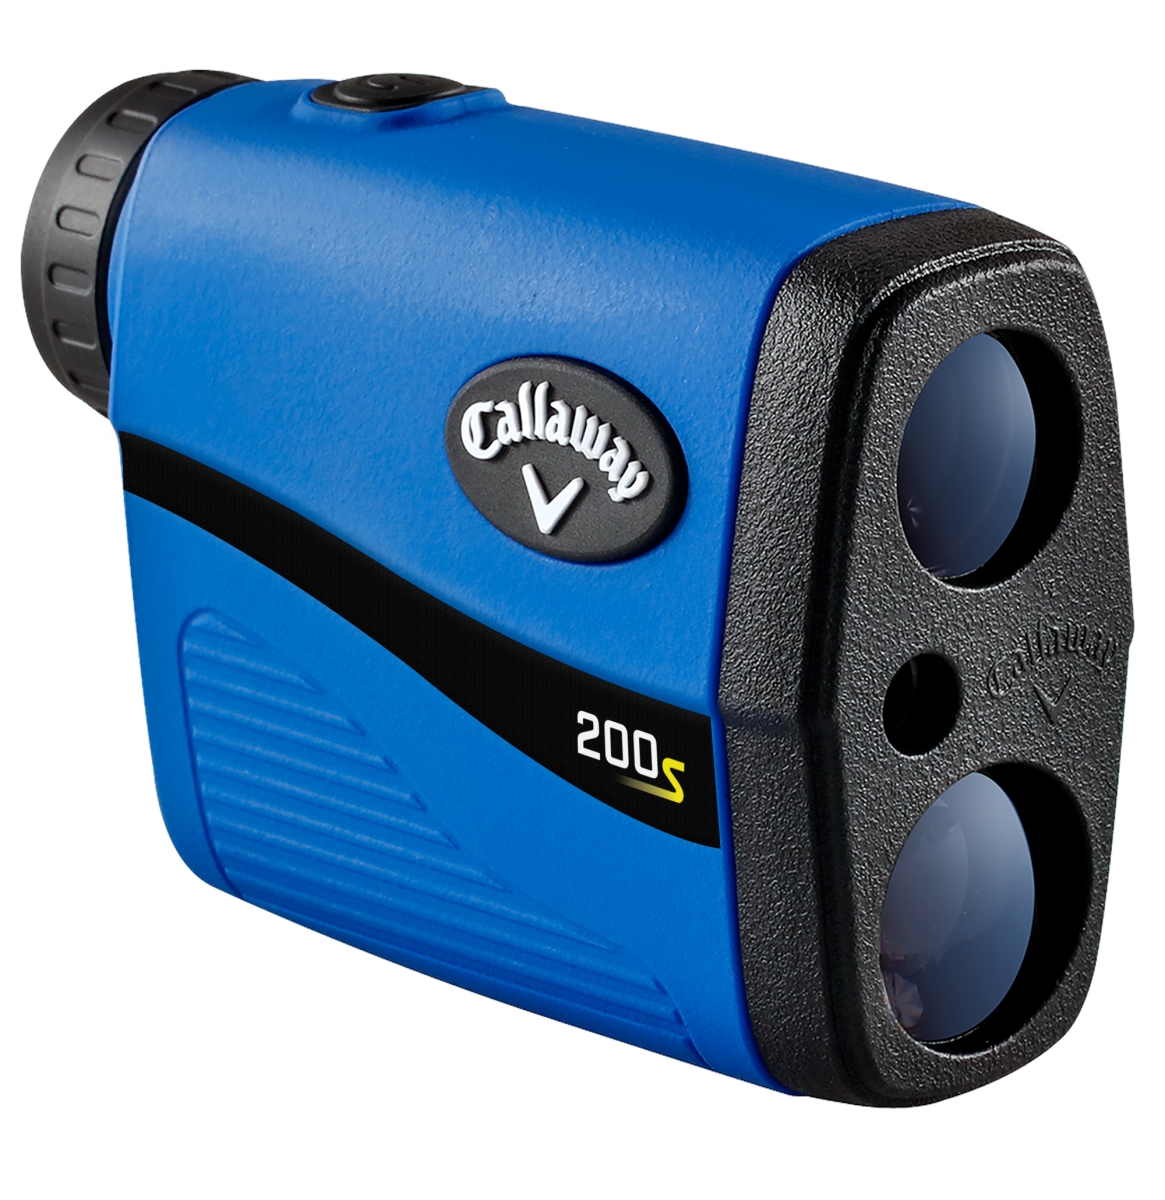 Picture of Callaway C70156 200s Laser Rangefinder